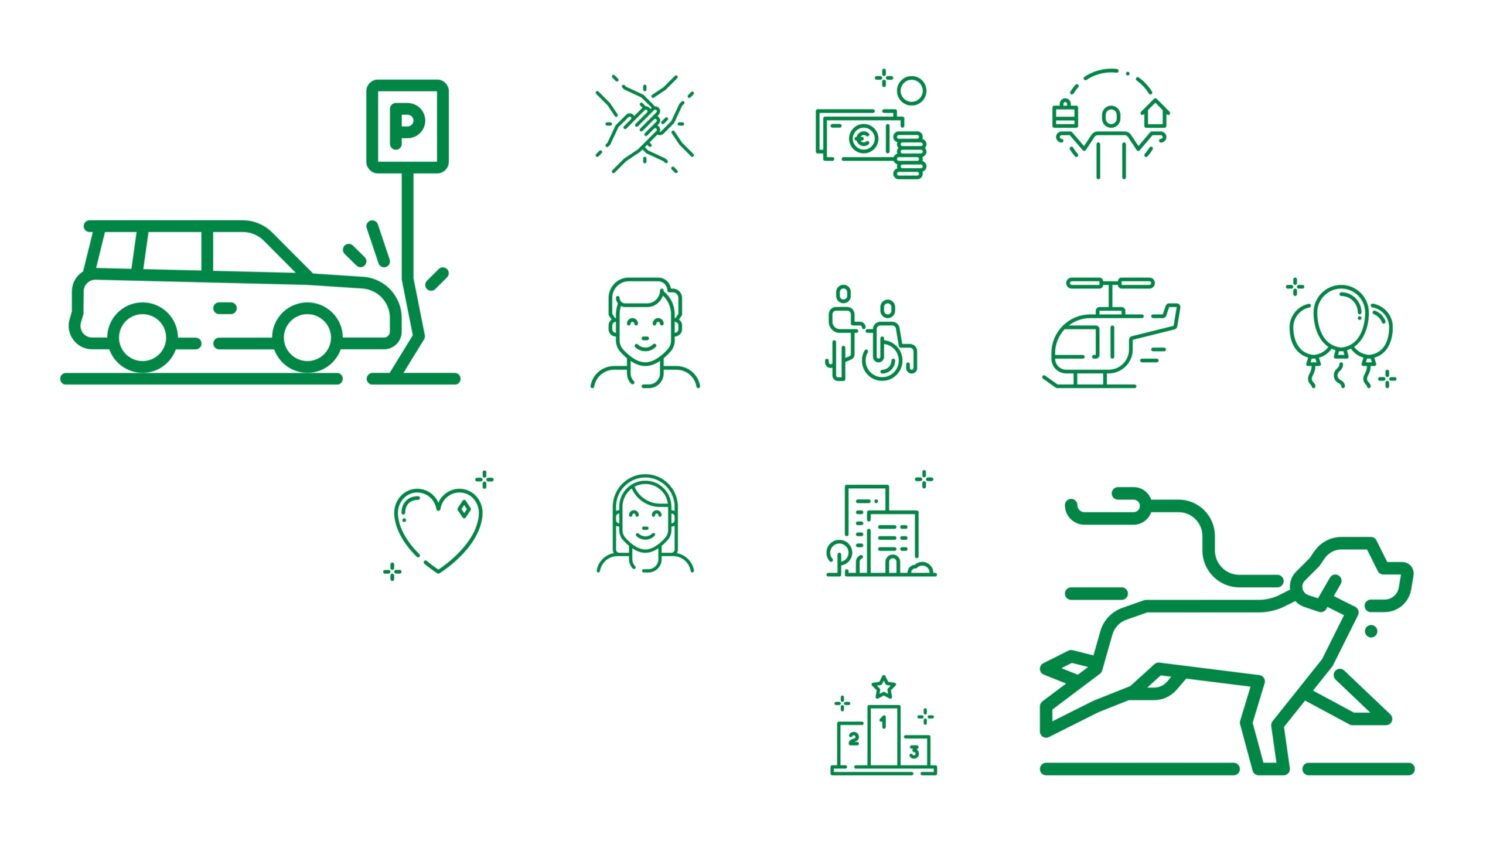 DEVK Corporate Design – Icons